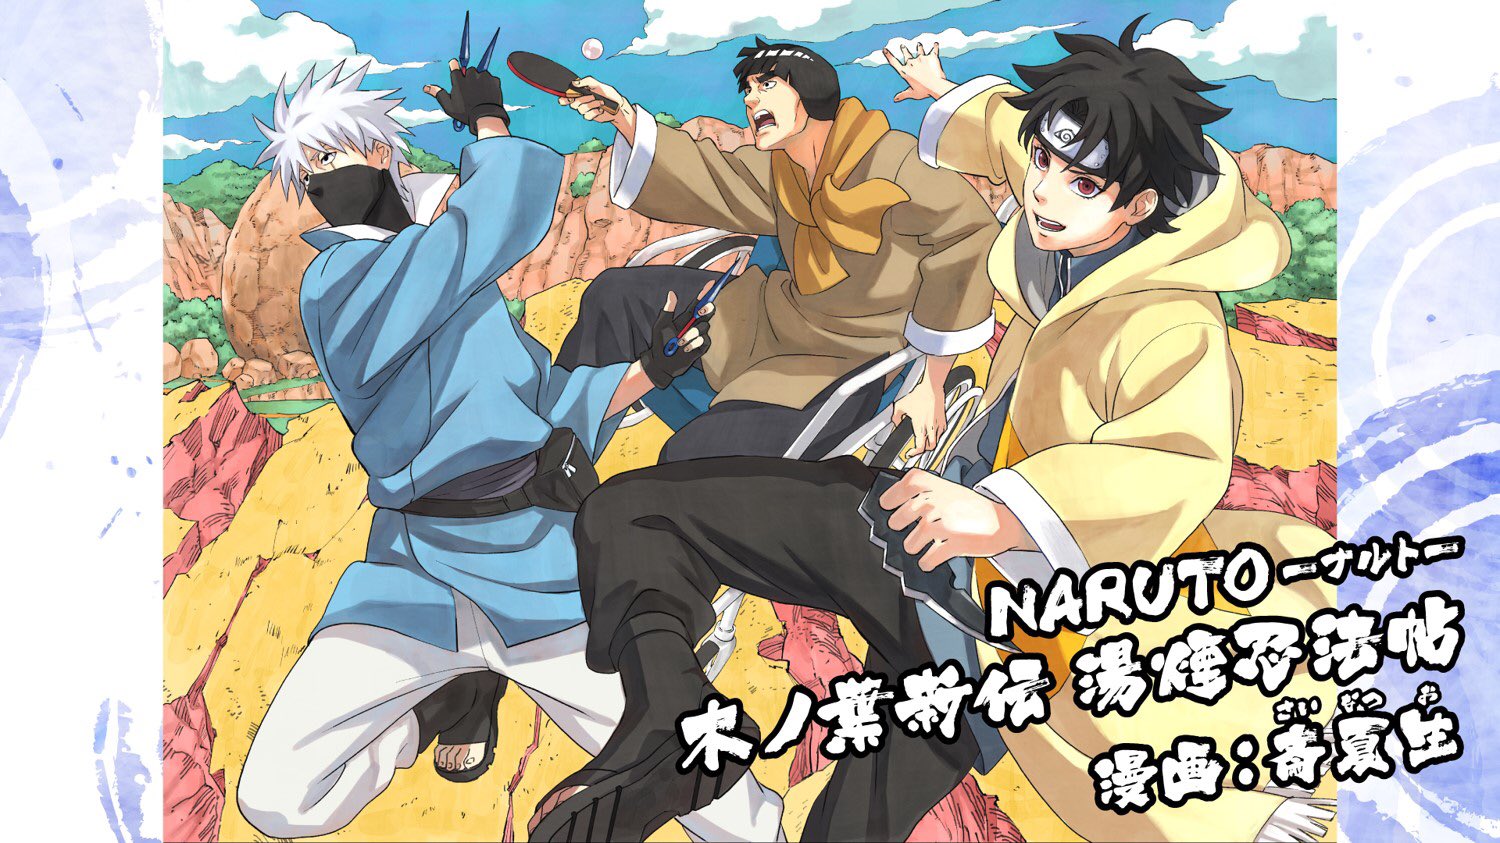 Duas novels de Naruto vão ganhar versão em mangá, incluindo Sasuke Restsuden FG3XzBmaAAE5B6F?format=jpg&name=large